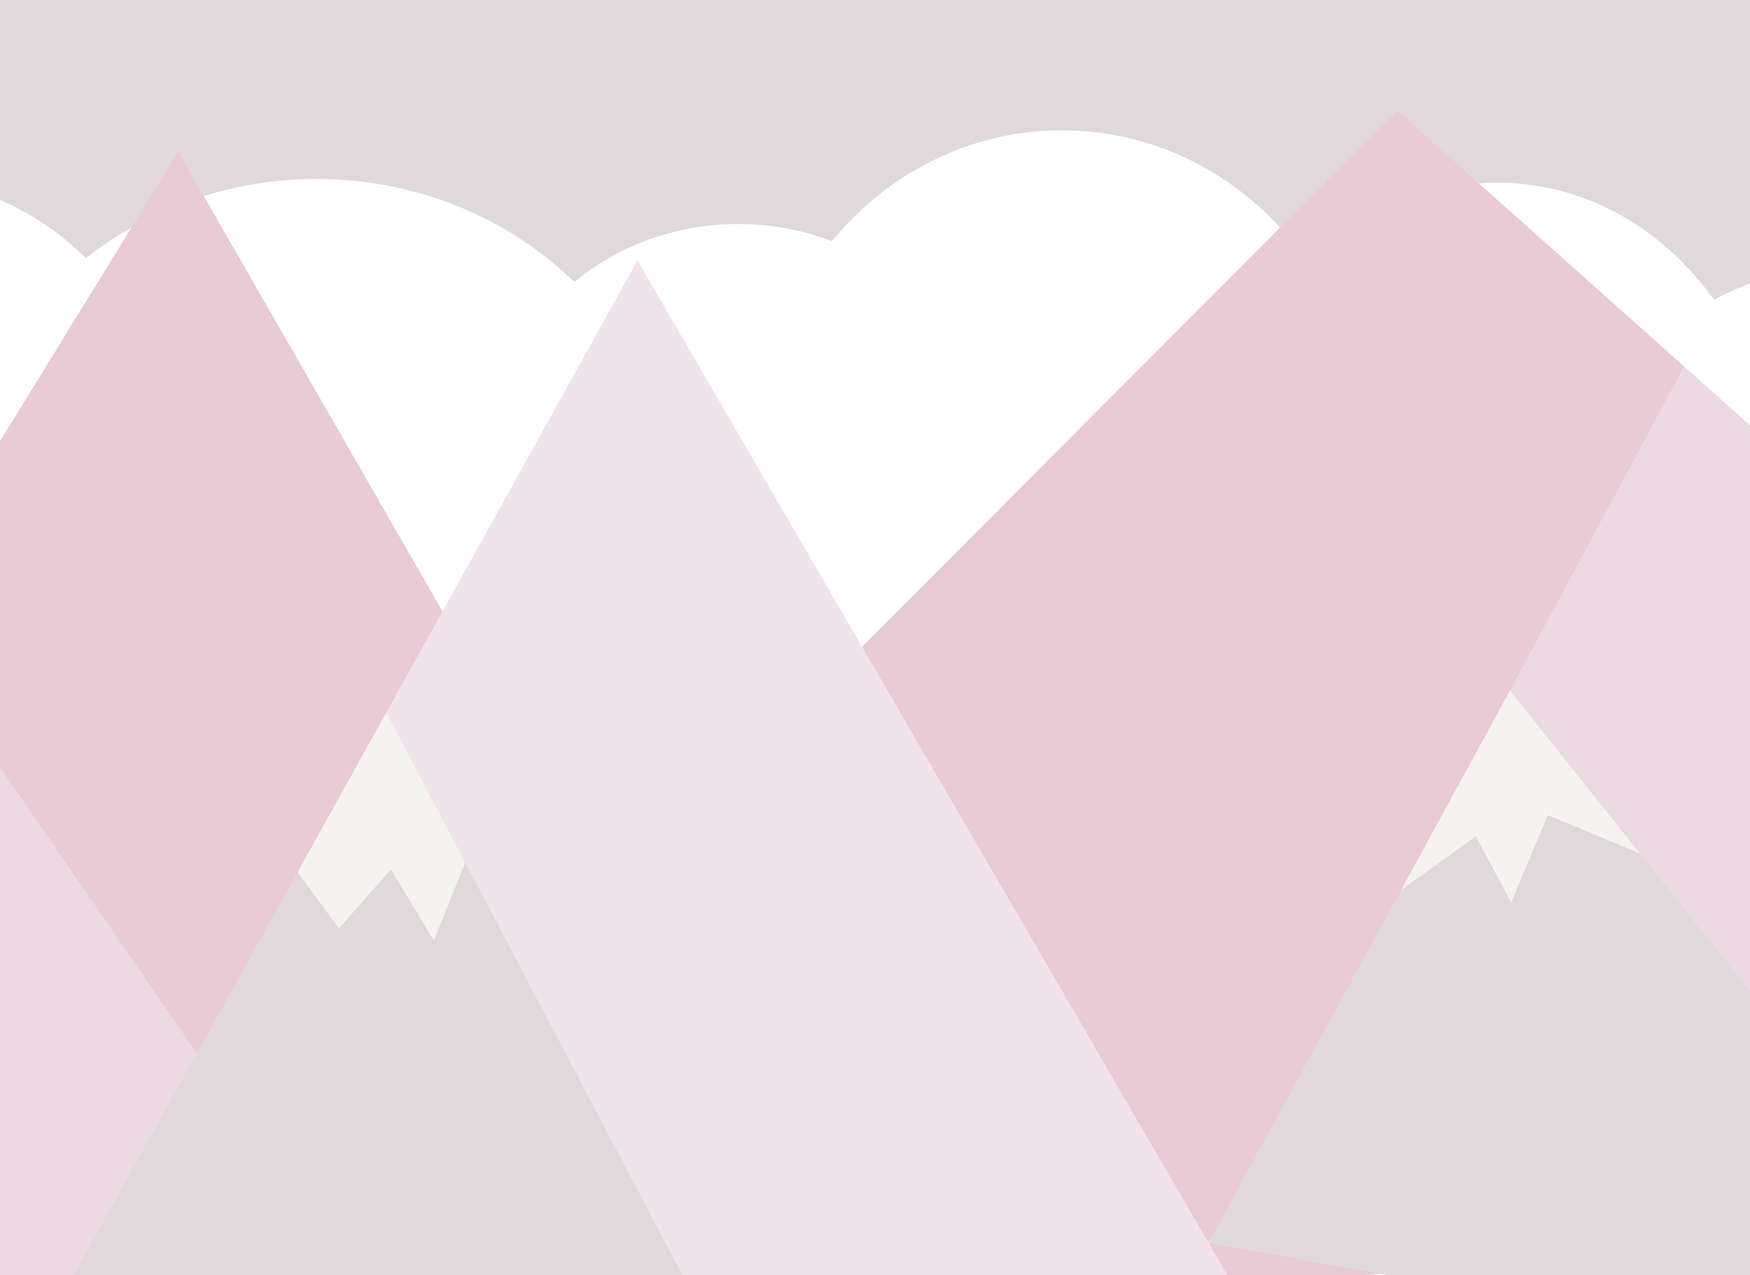             Kinderkamer Bergen met Wolken Onderlaag behang - Roze, Wit, Grijs
        